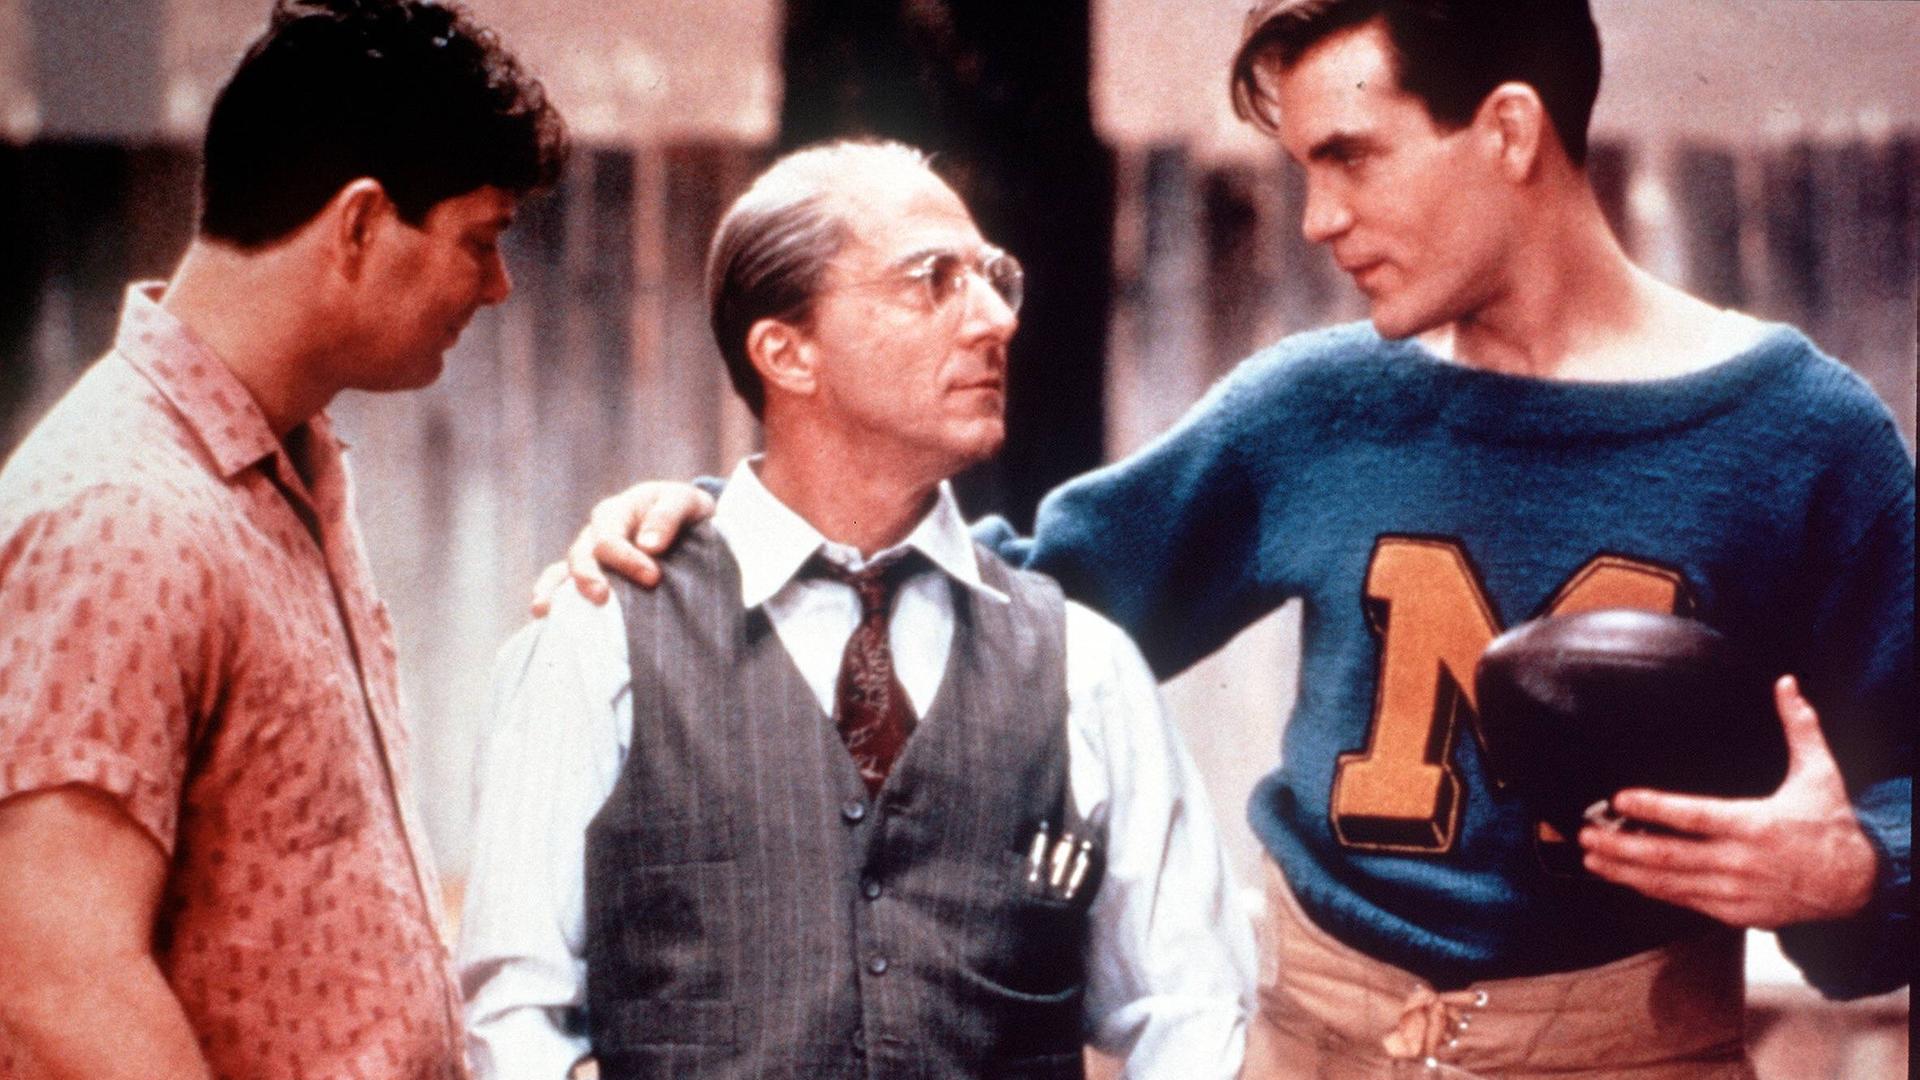 Filmszene mit drei Männern aus "Tod eines Handlungsreisenden": In der Mitte steht Willy Loman, gespielt von Dustin Hofmann. 